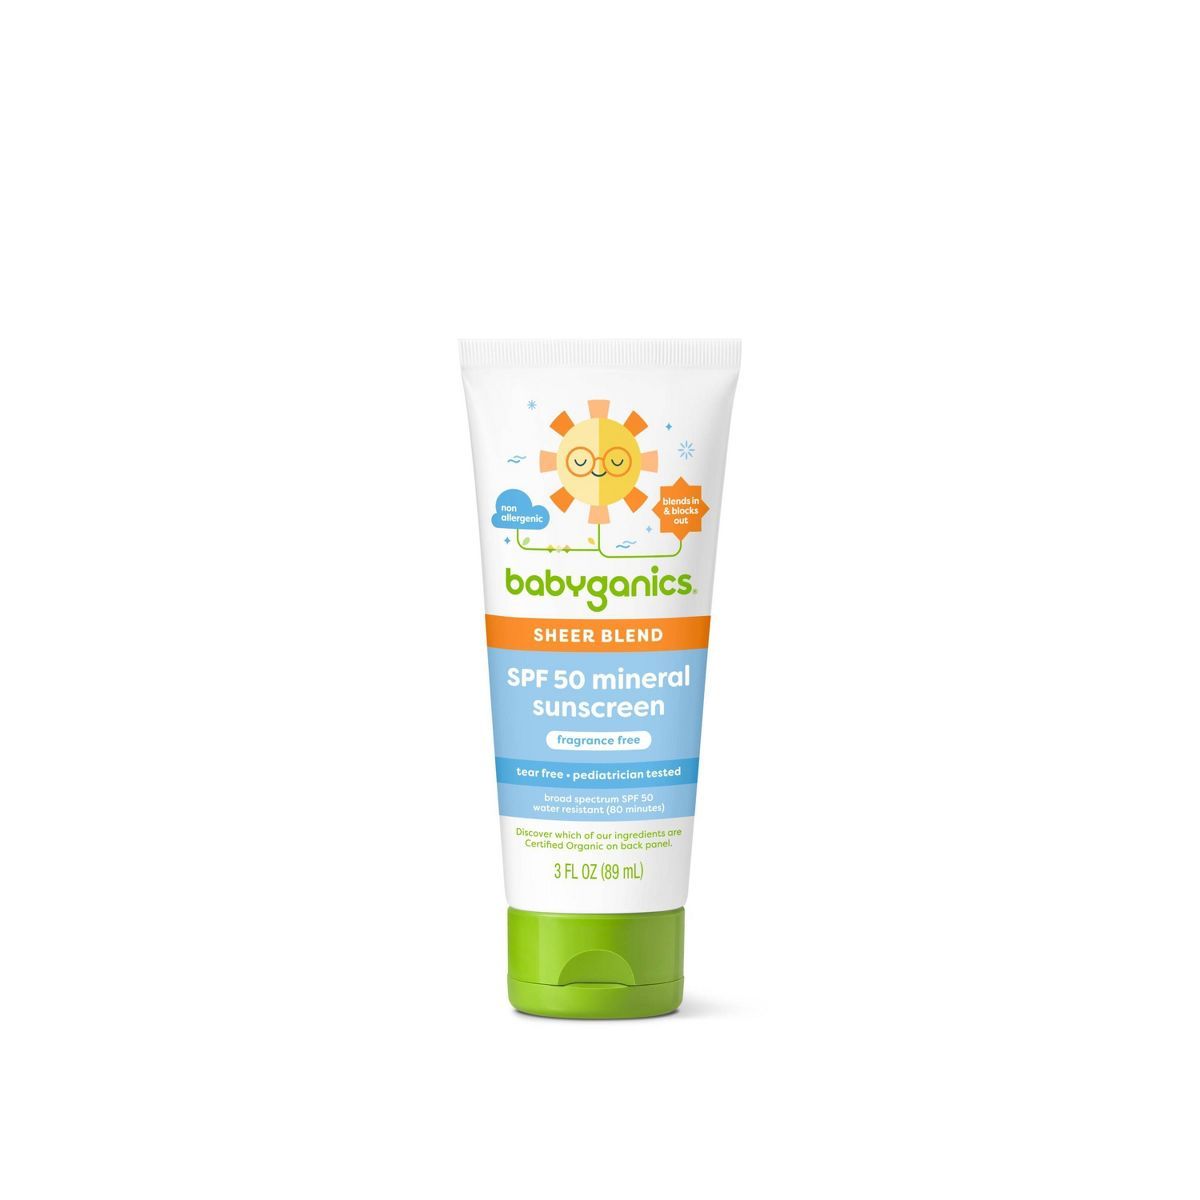 Babyganics Sheer Blend SPF 50 Mineral Sunscreen - 3 fl oz | Target